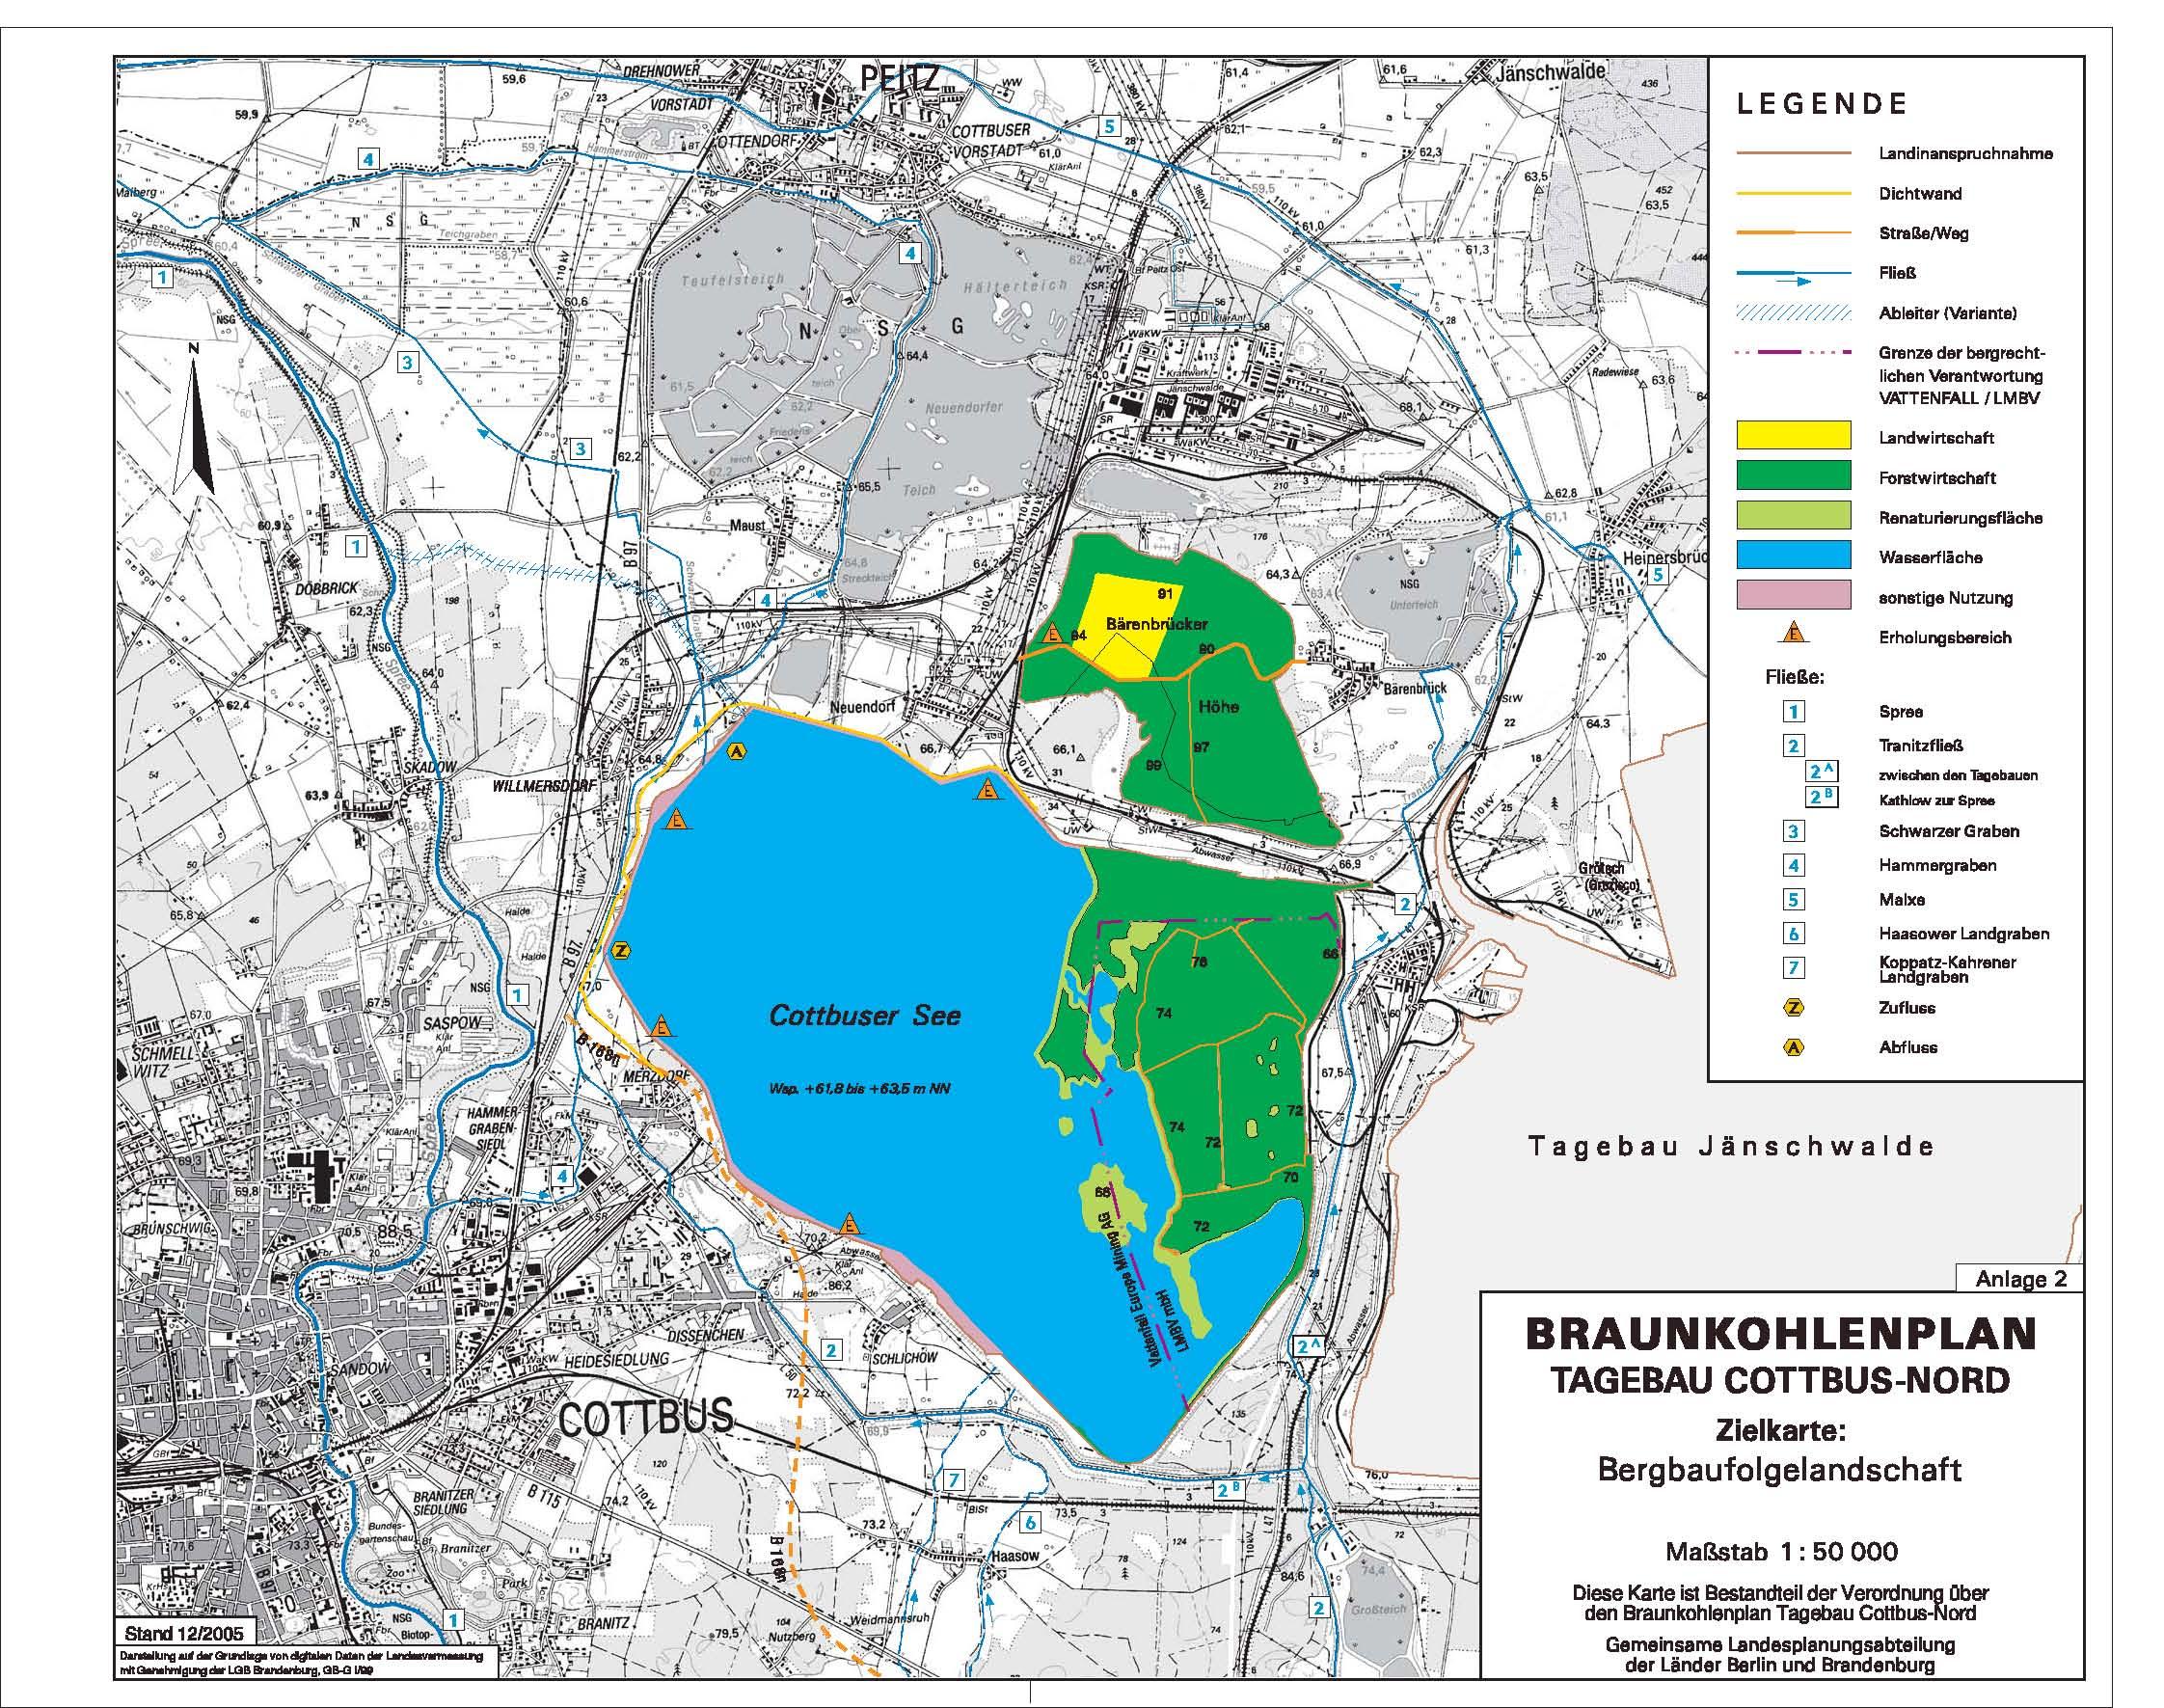 Braunkohlenplan - Tagebau Cottbus-Nord - Zielkarte: Bergbaufolgelandschaft